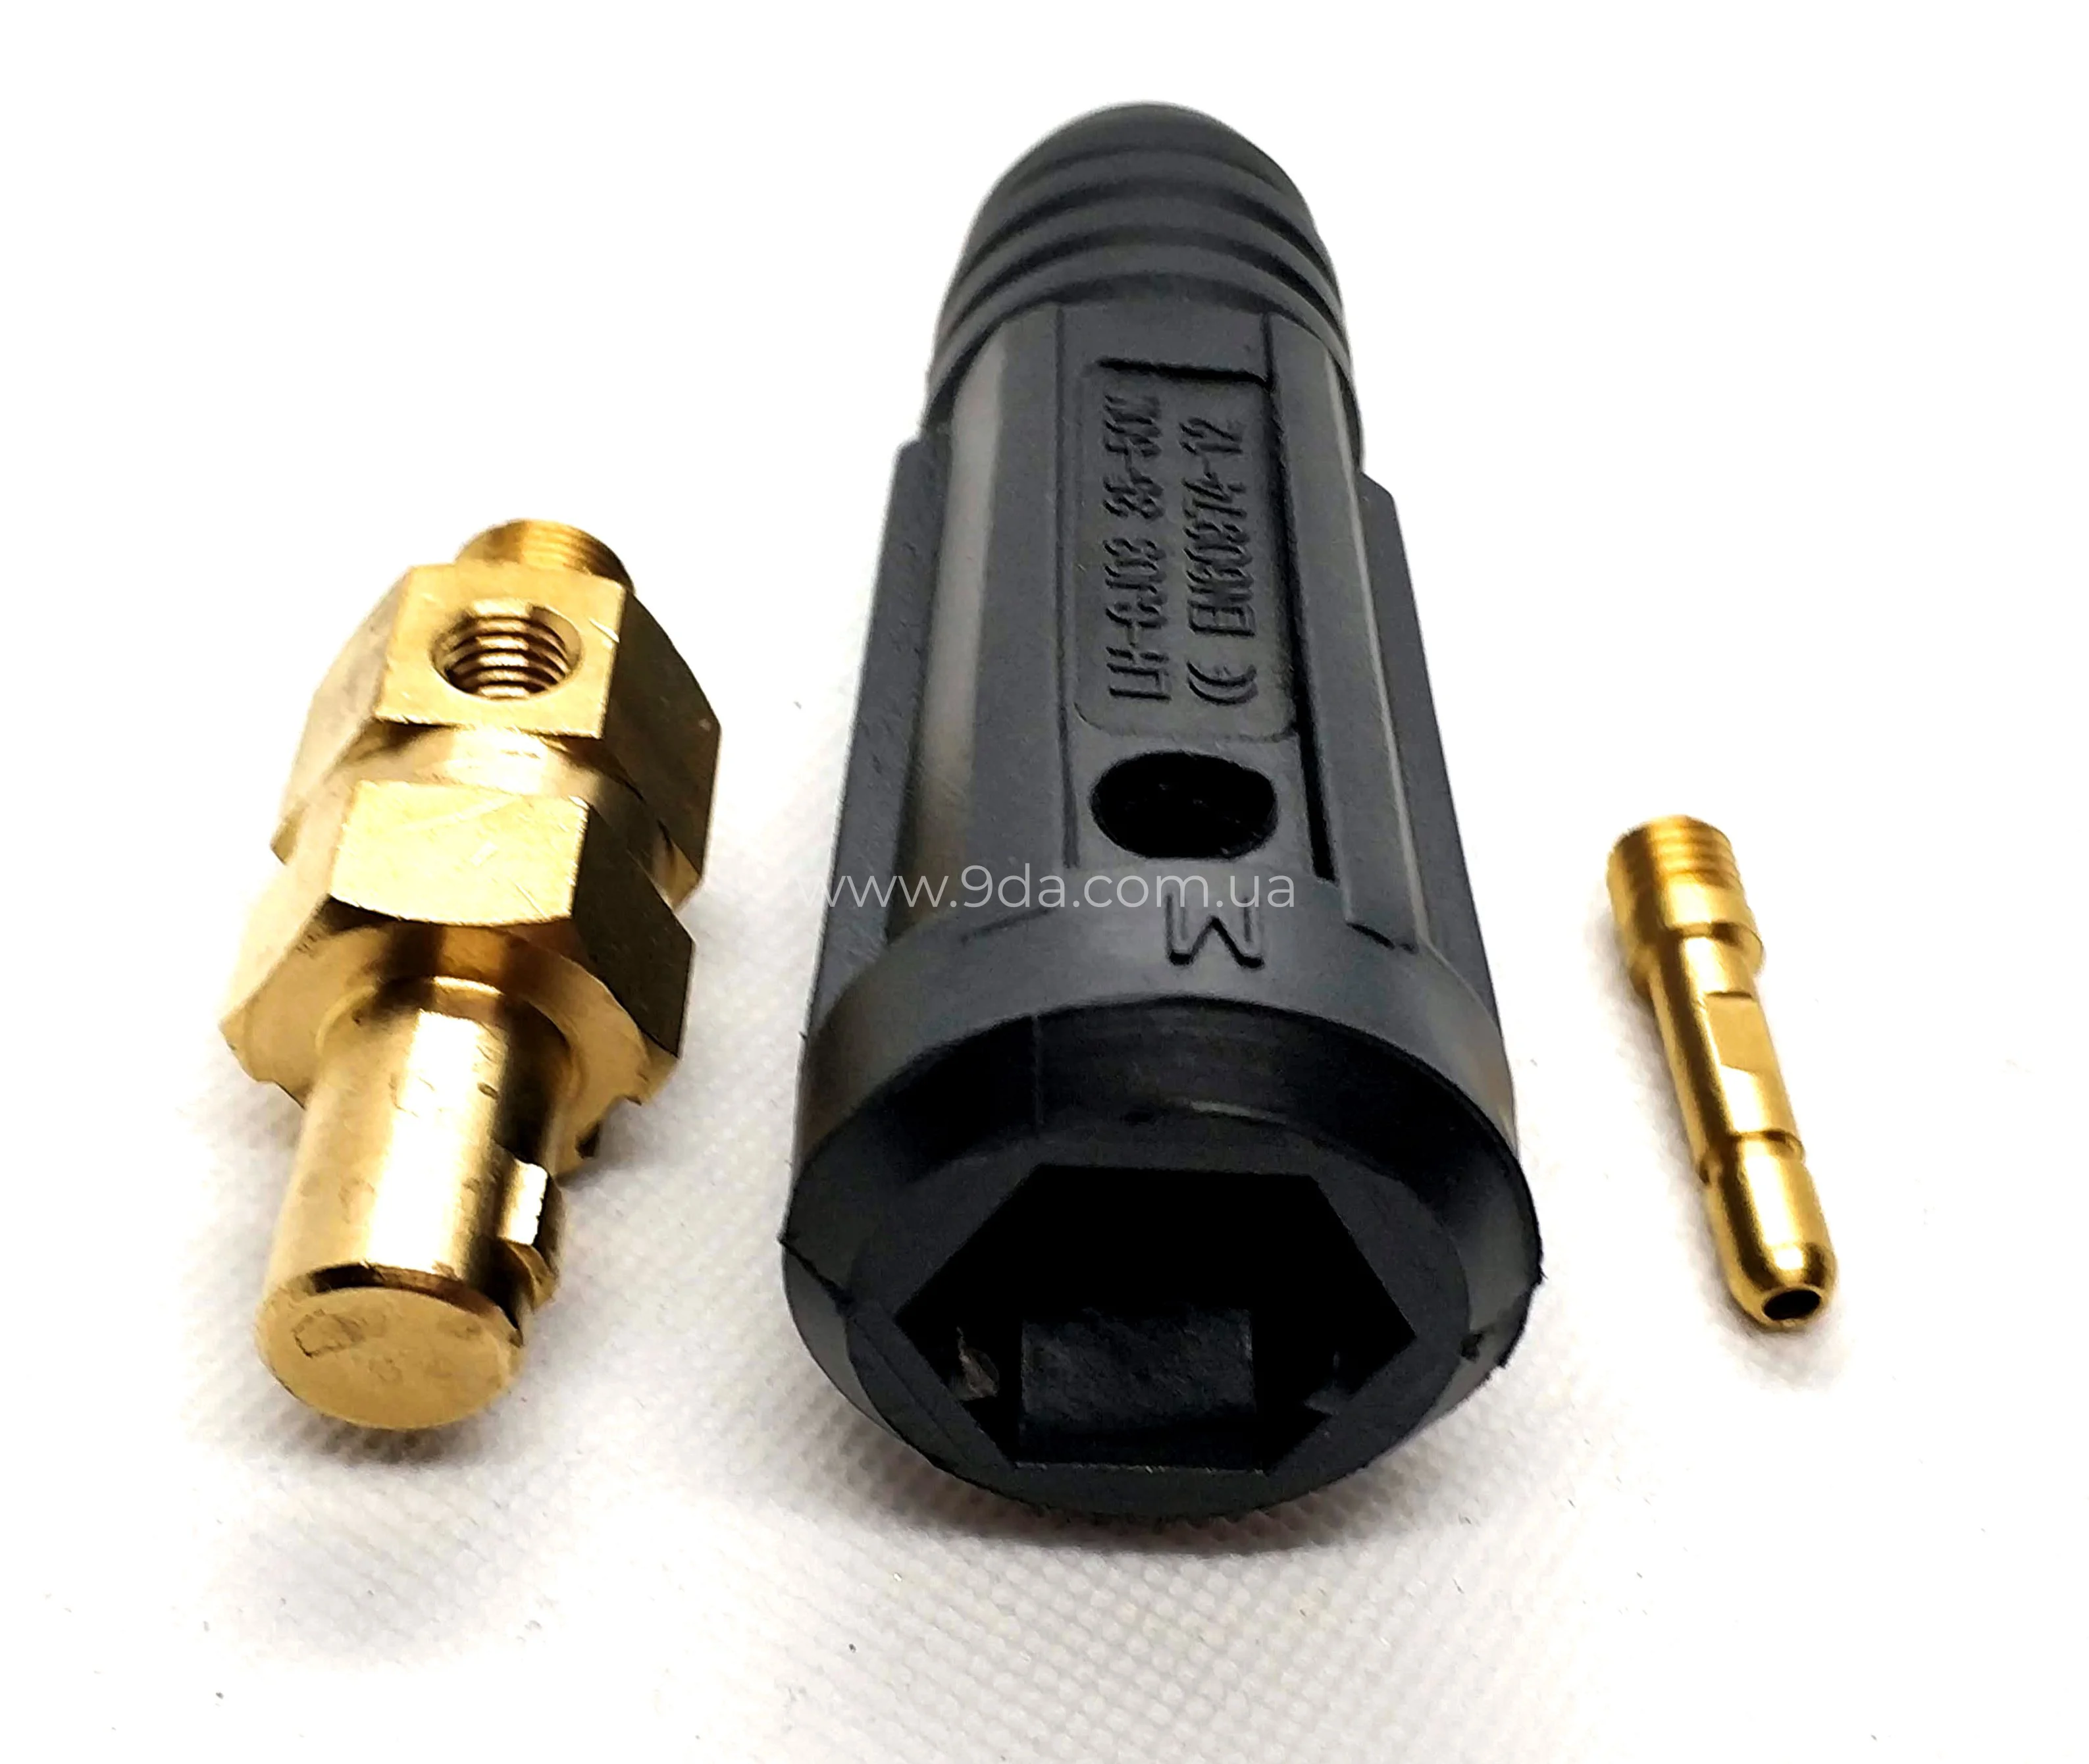 Штекер на кабеля, байонентне під газ TIG 10-25мм, ф9мм, M12x1мм, KWeld - 3